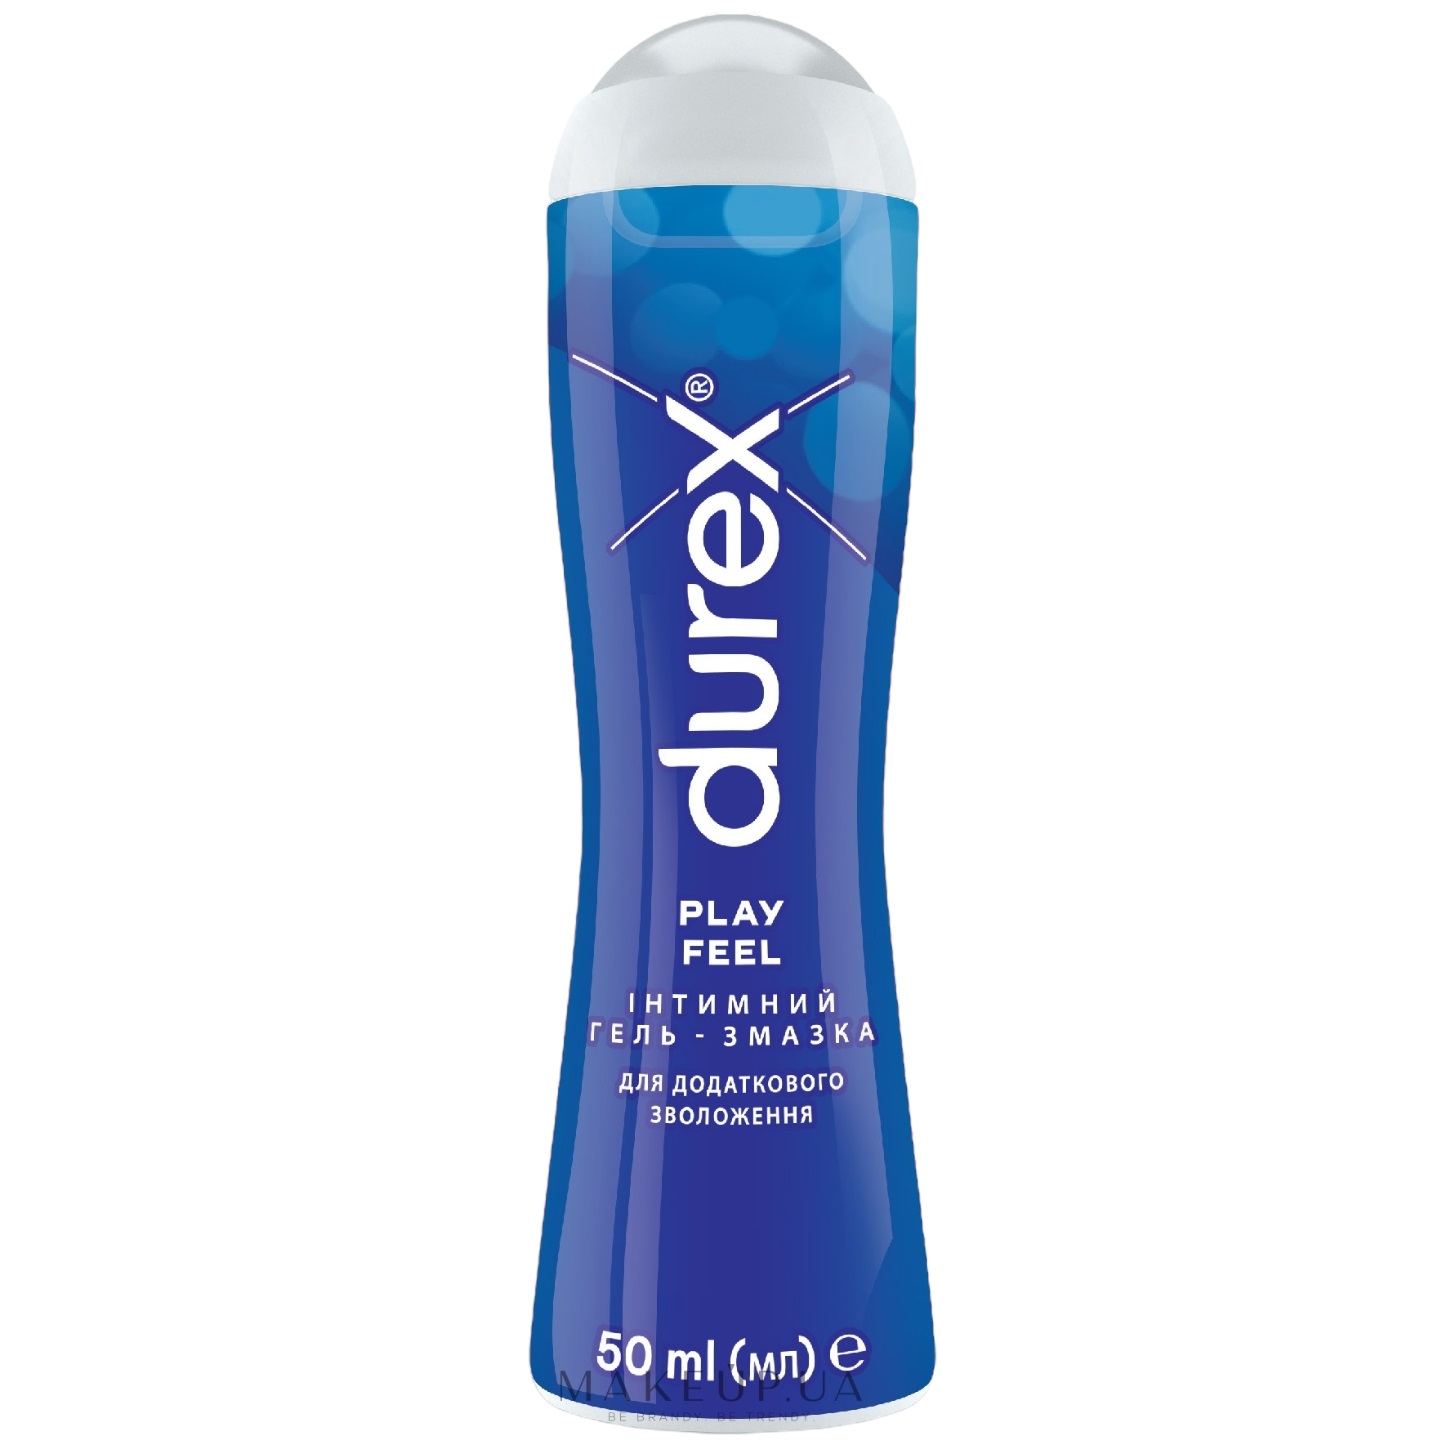 Интимный гель-смазка Durex Play Feel для дополнительного увлажнения (лубрикант), 50 мл (3037095) - фото 1